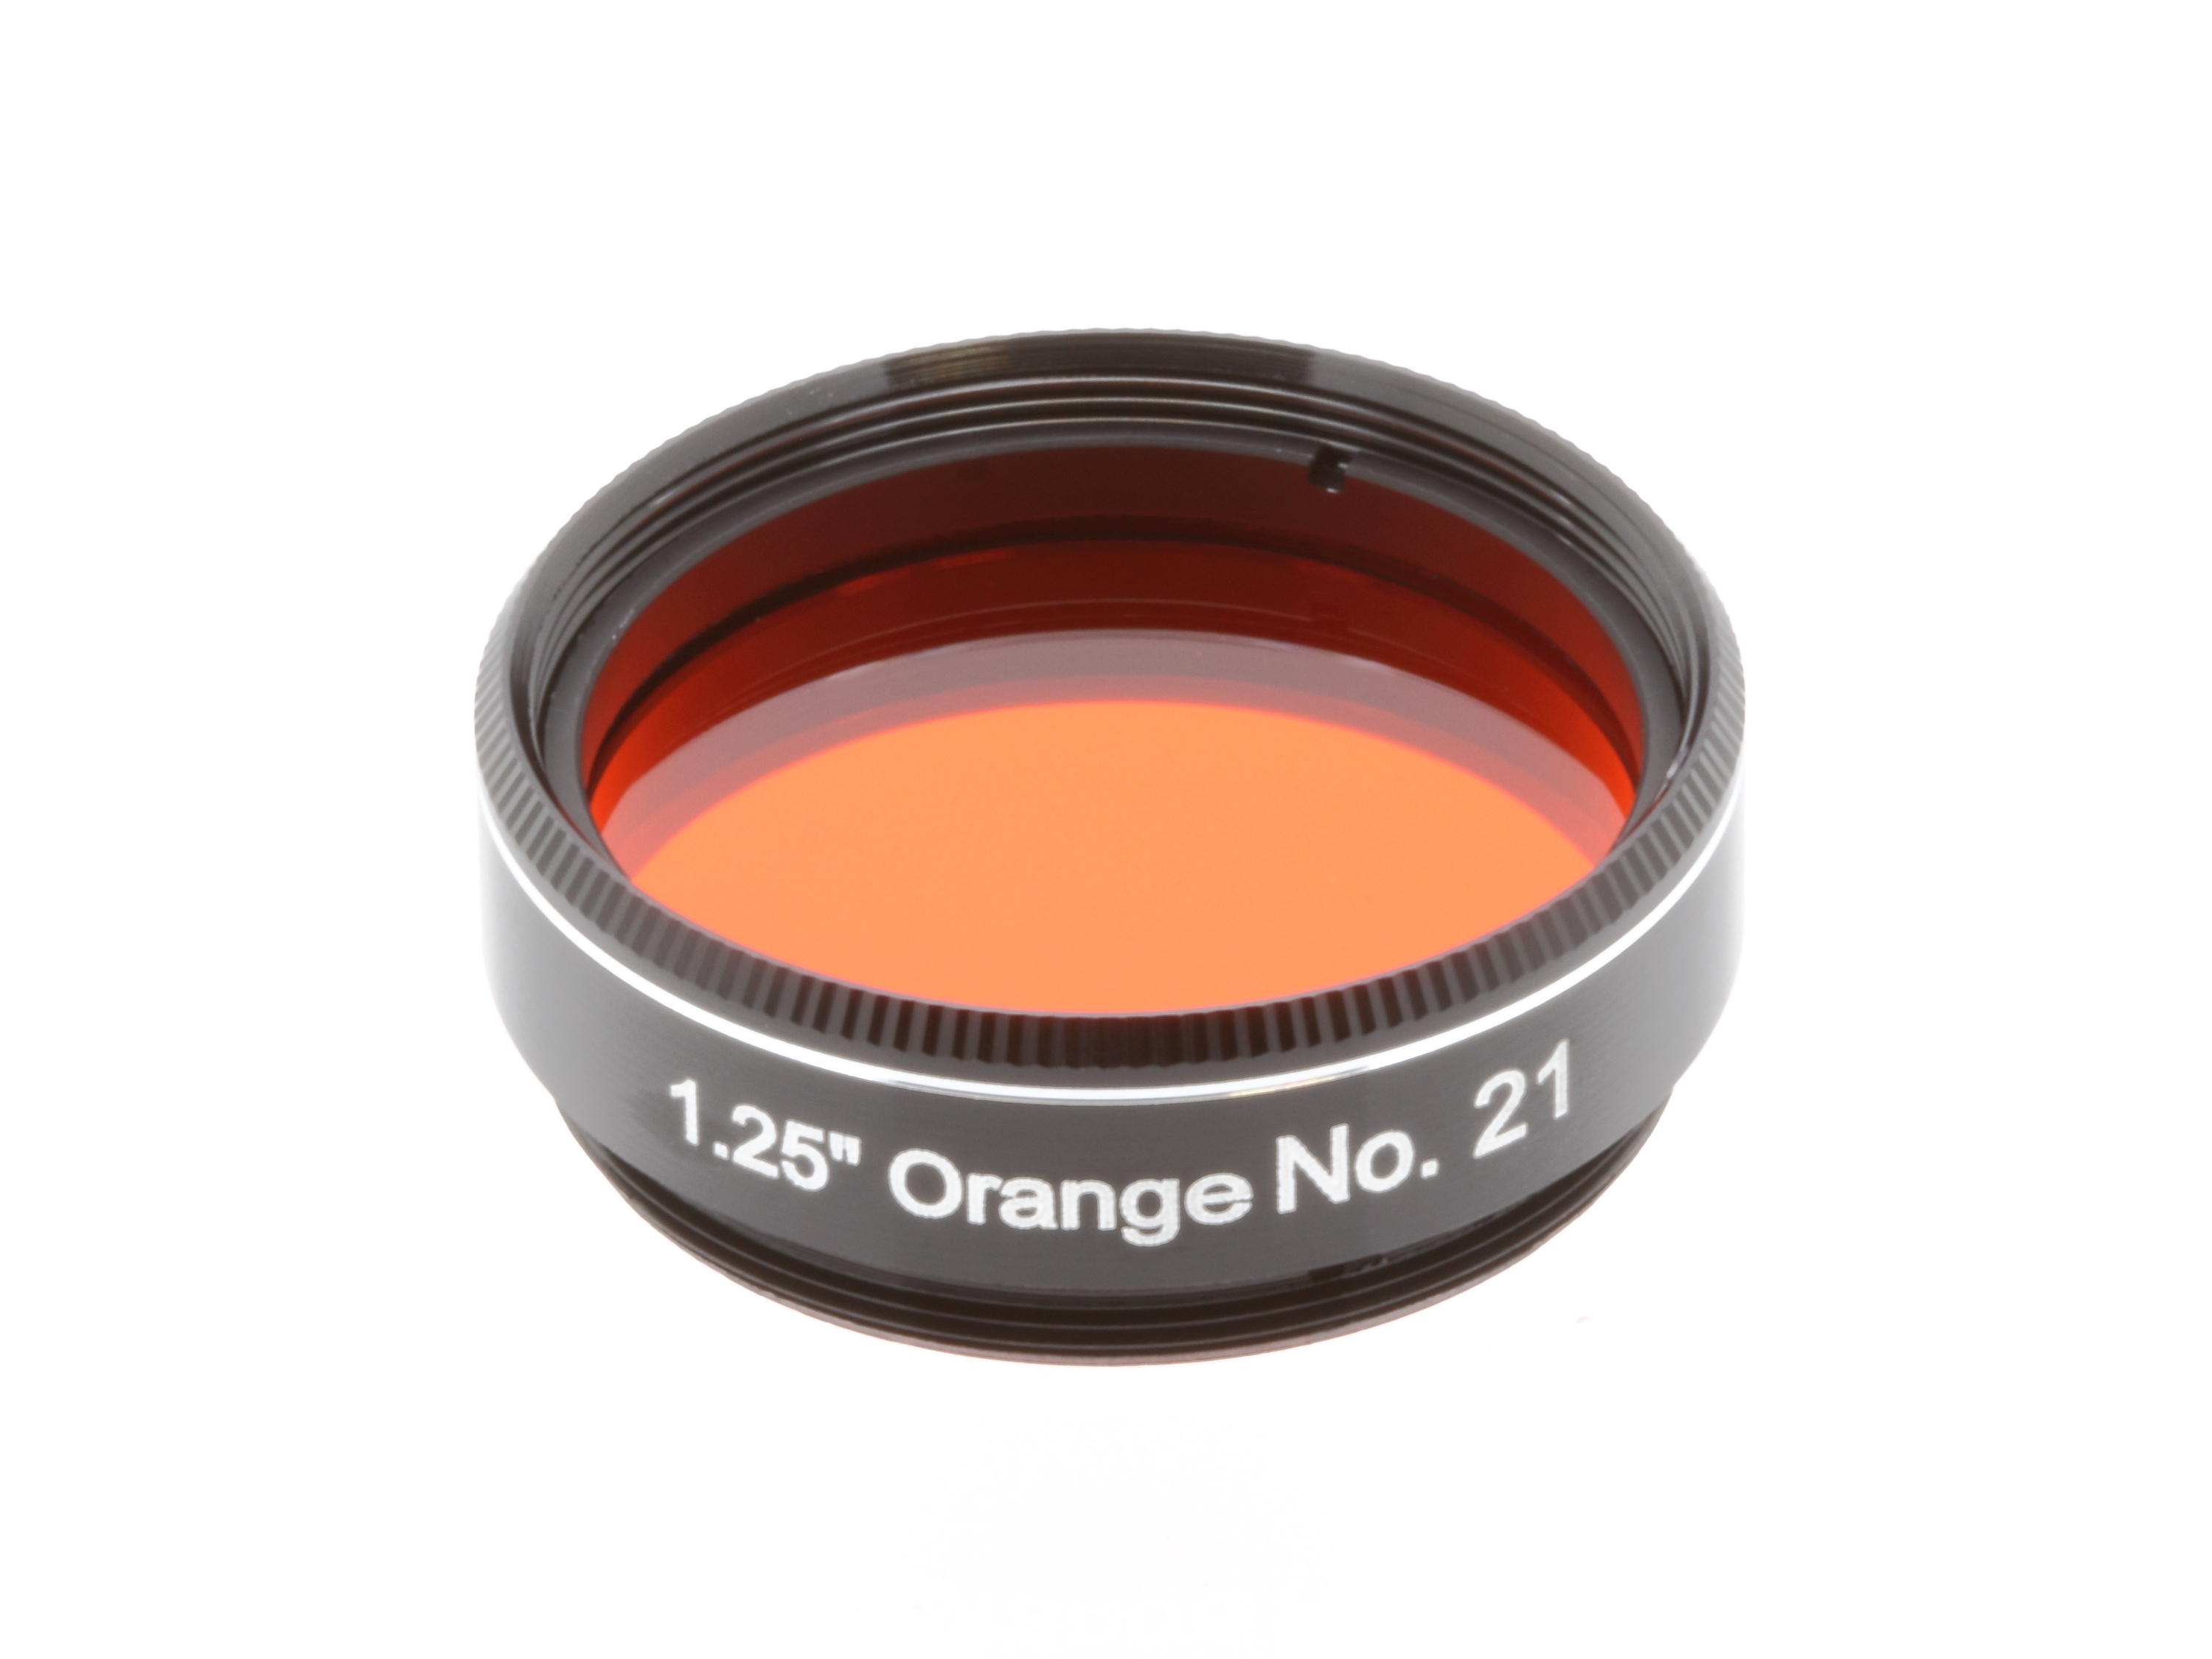 EXPLORE SCIENTIFIC Filter 1.25" Orange Nr.21